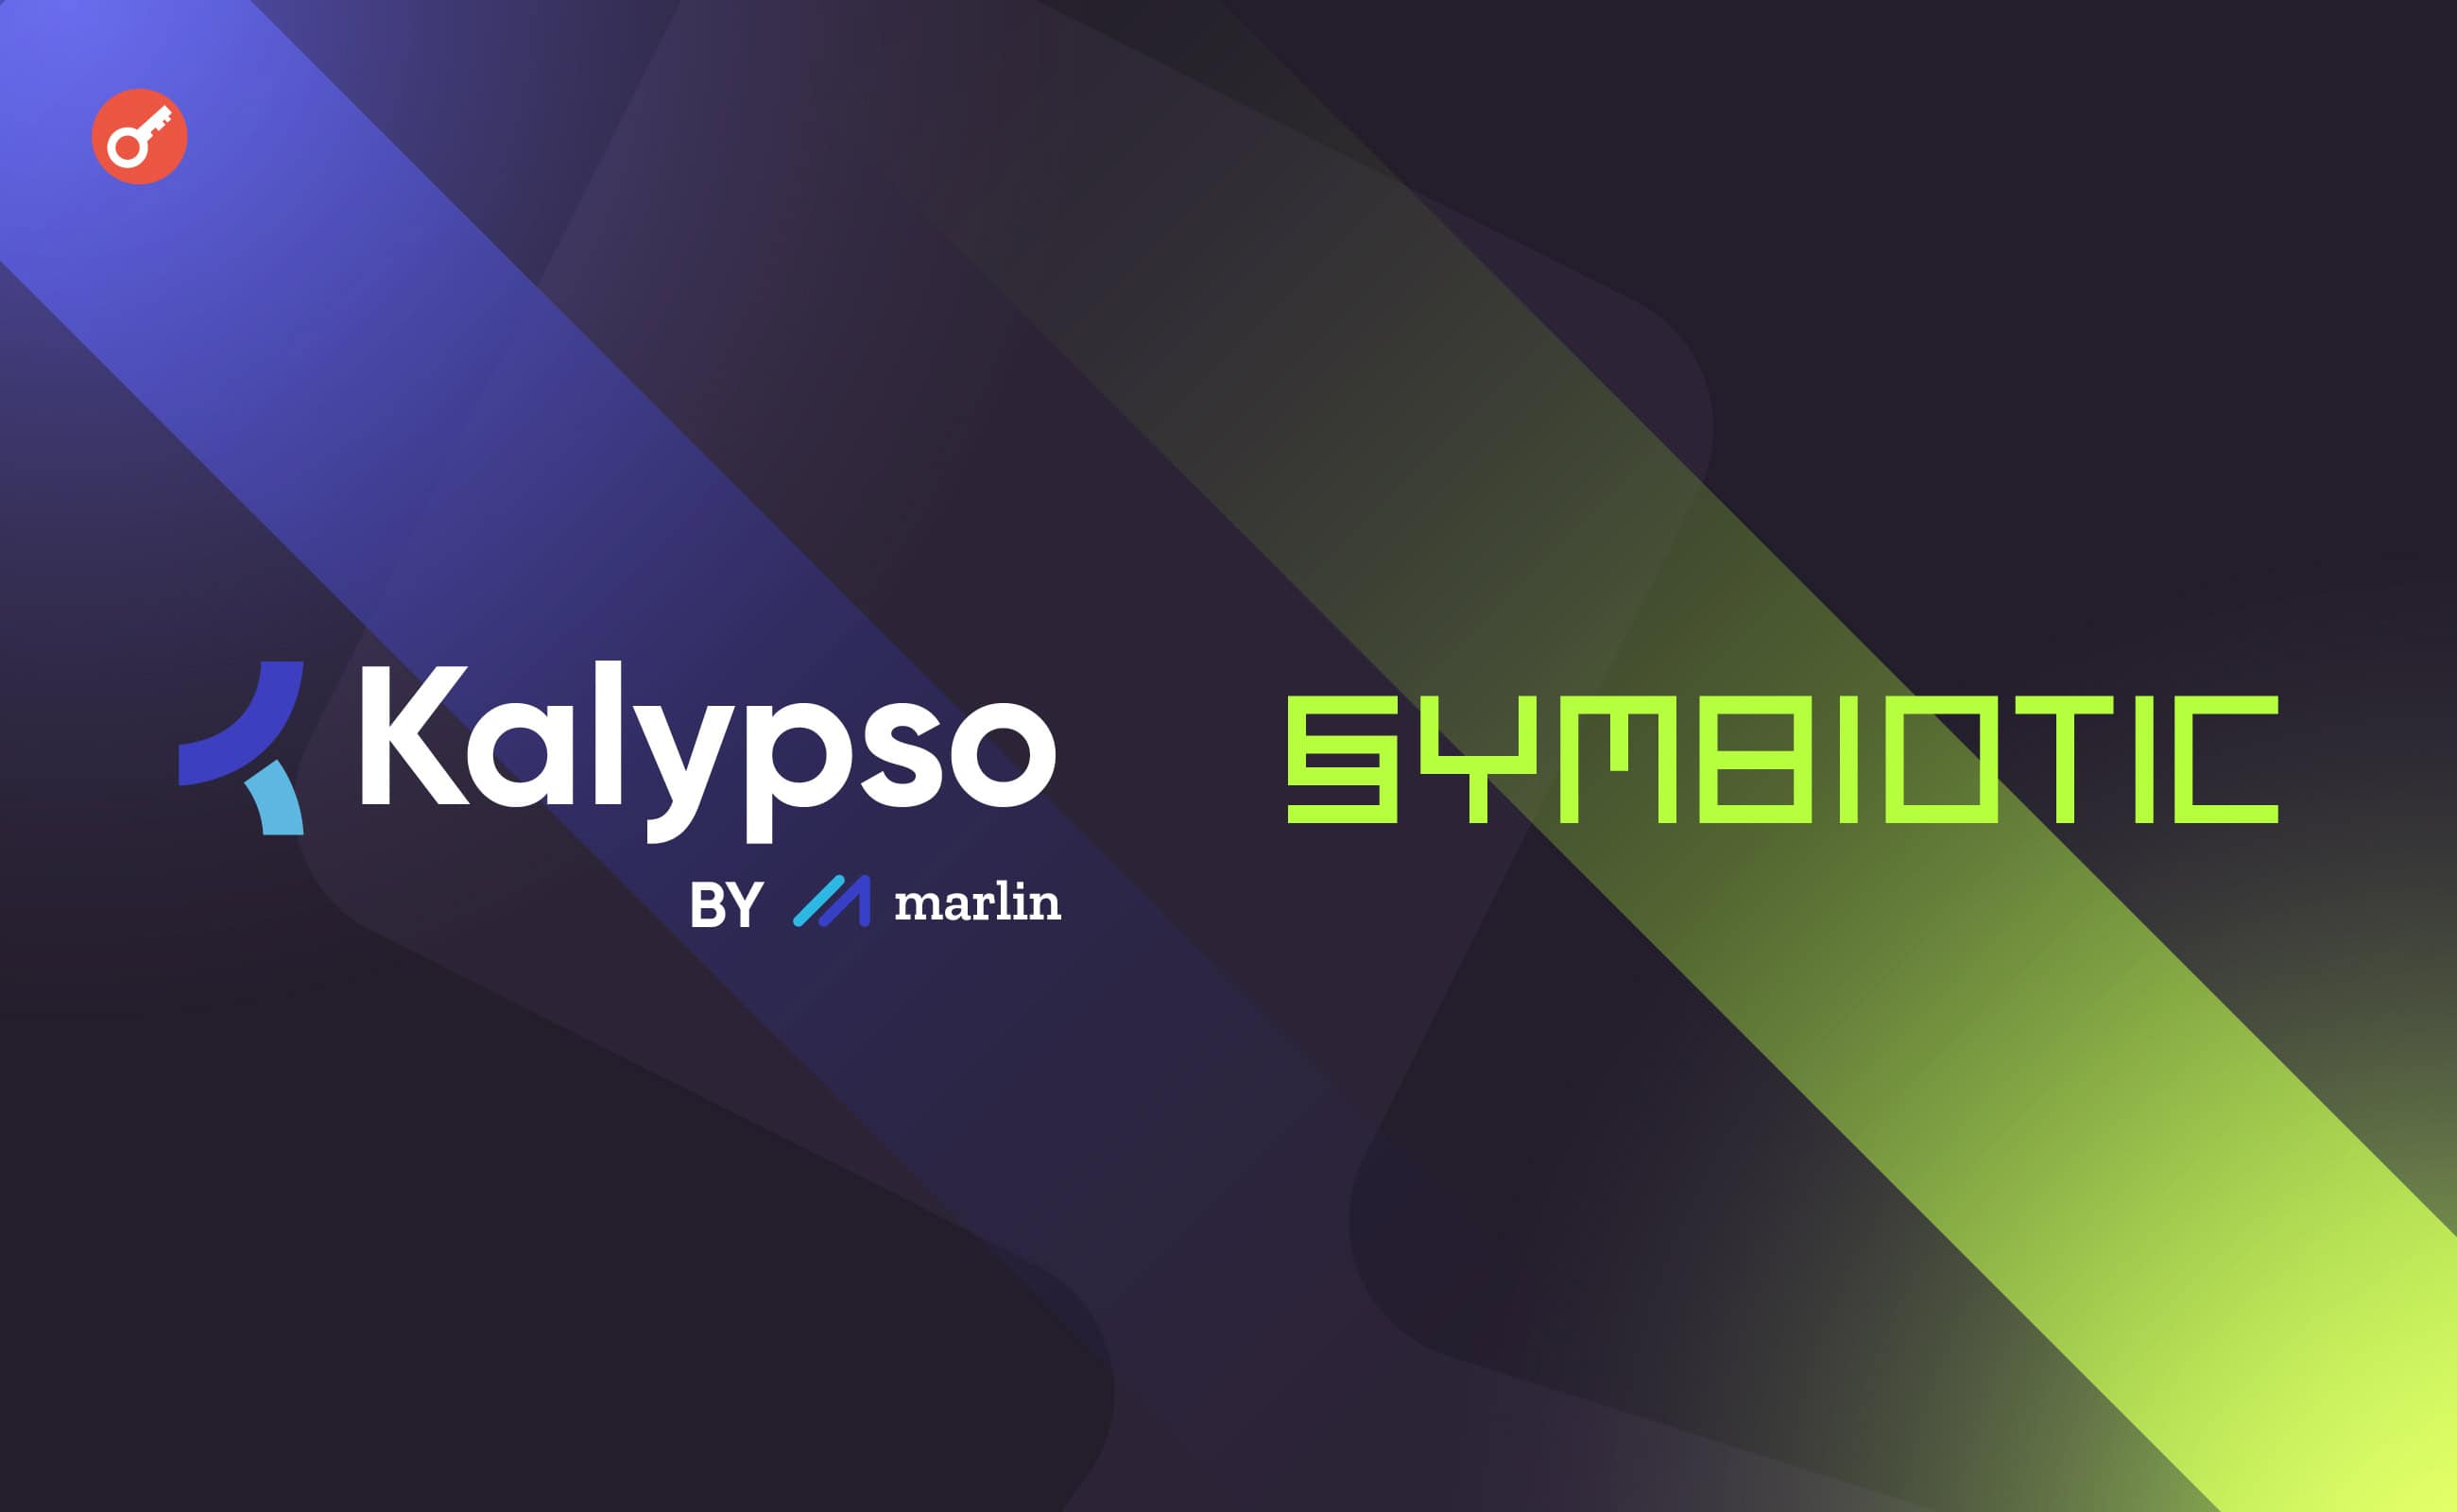 Kalypso объявил о сотрудничестве с Symbiotic. Заглавный коллаж новости.